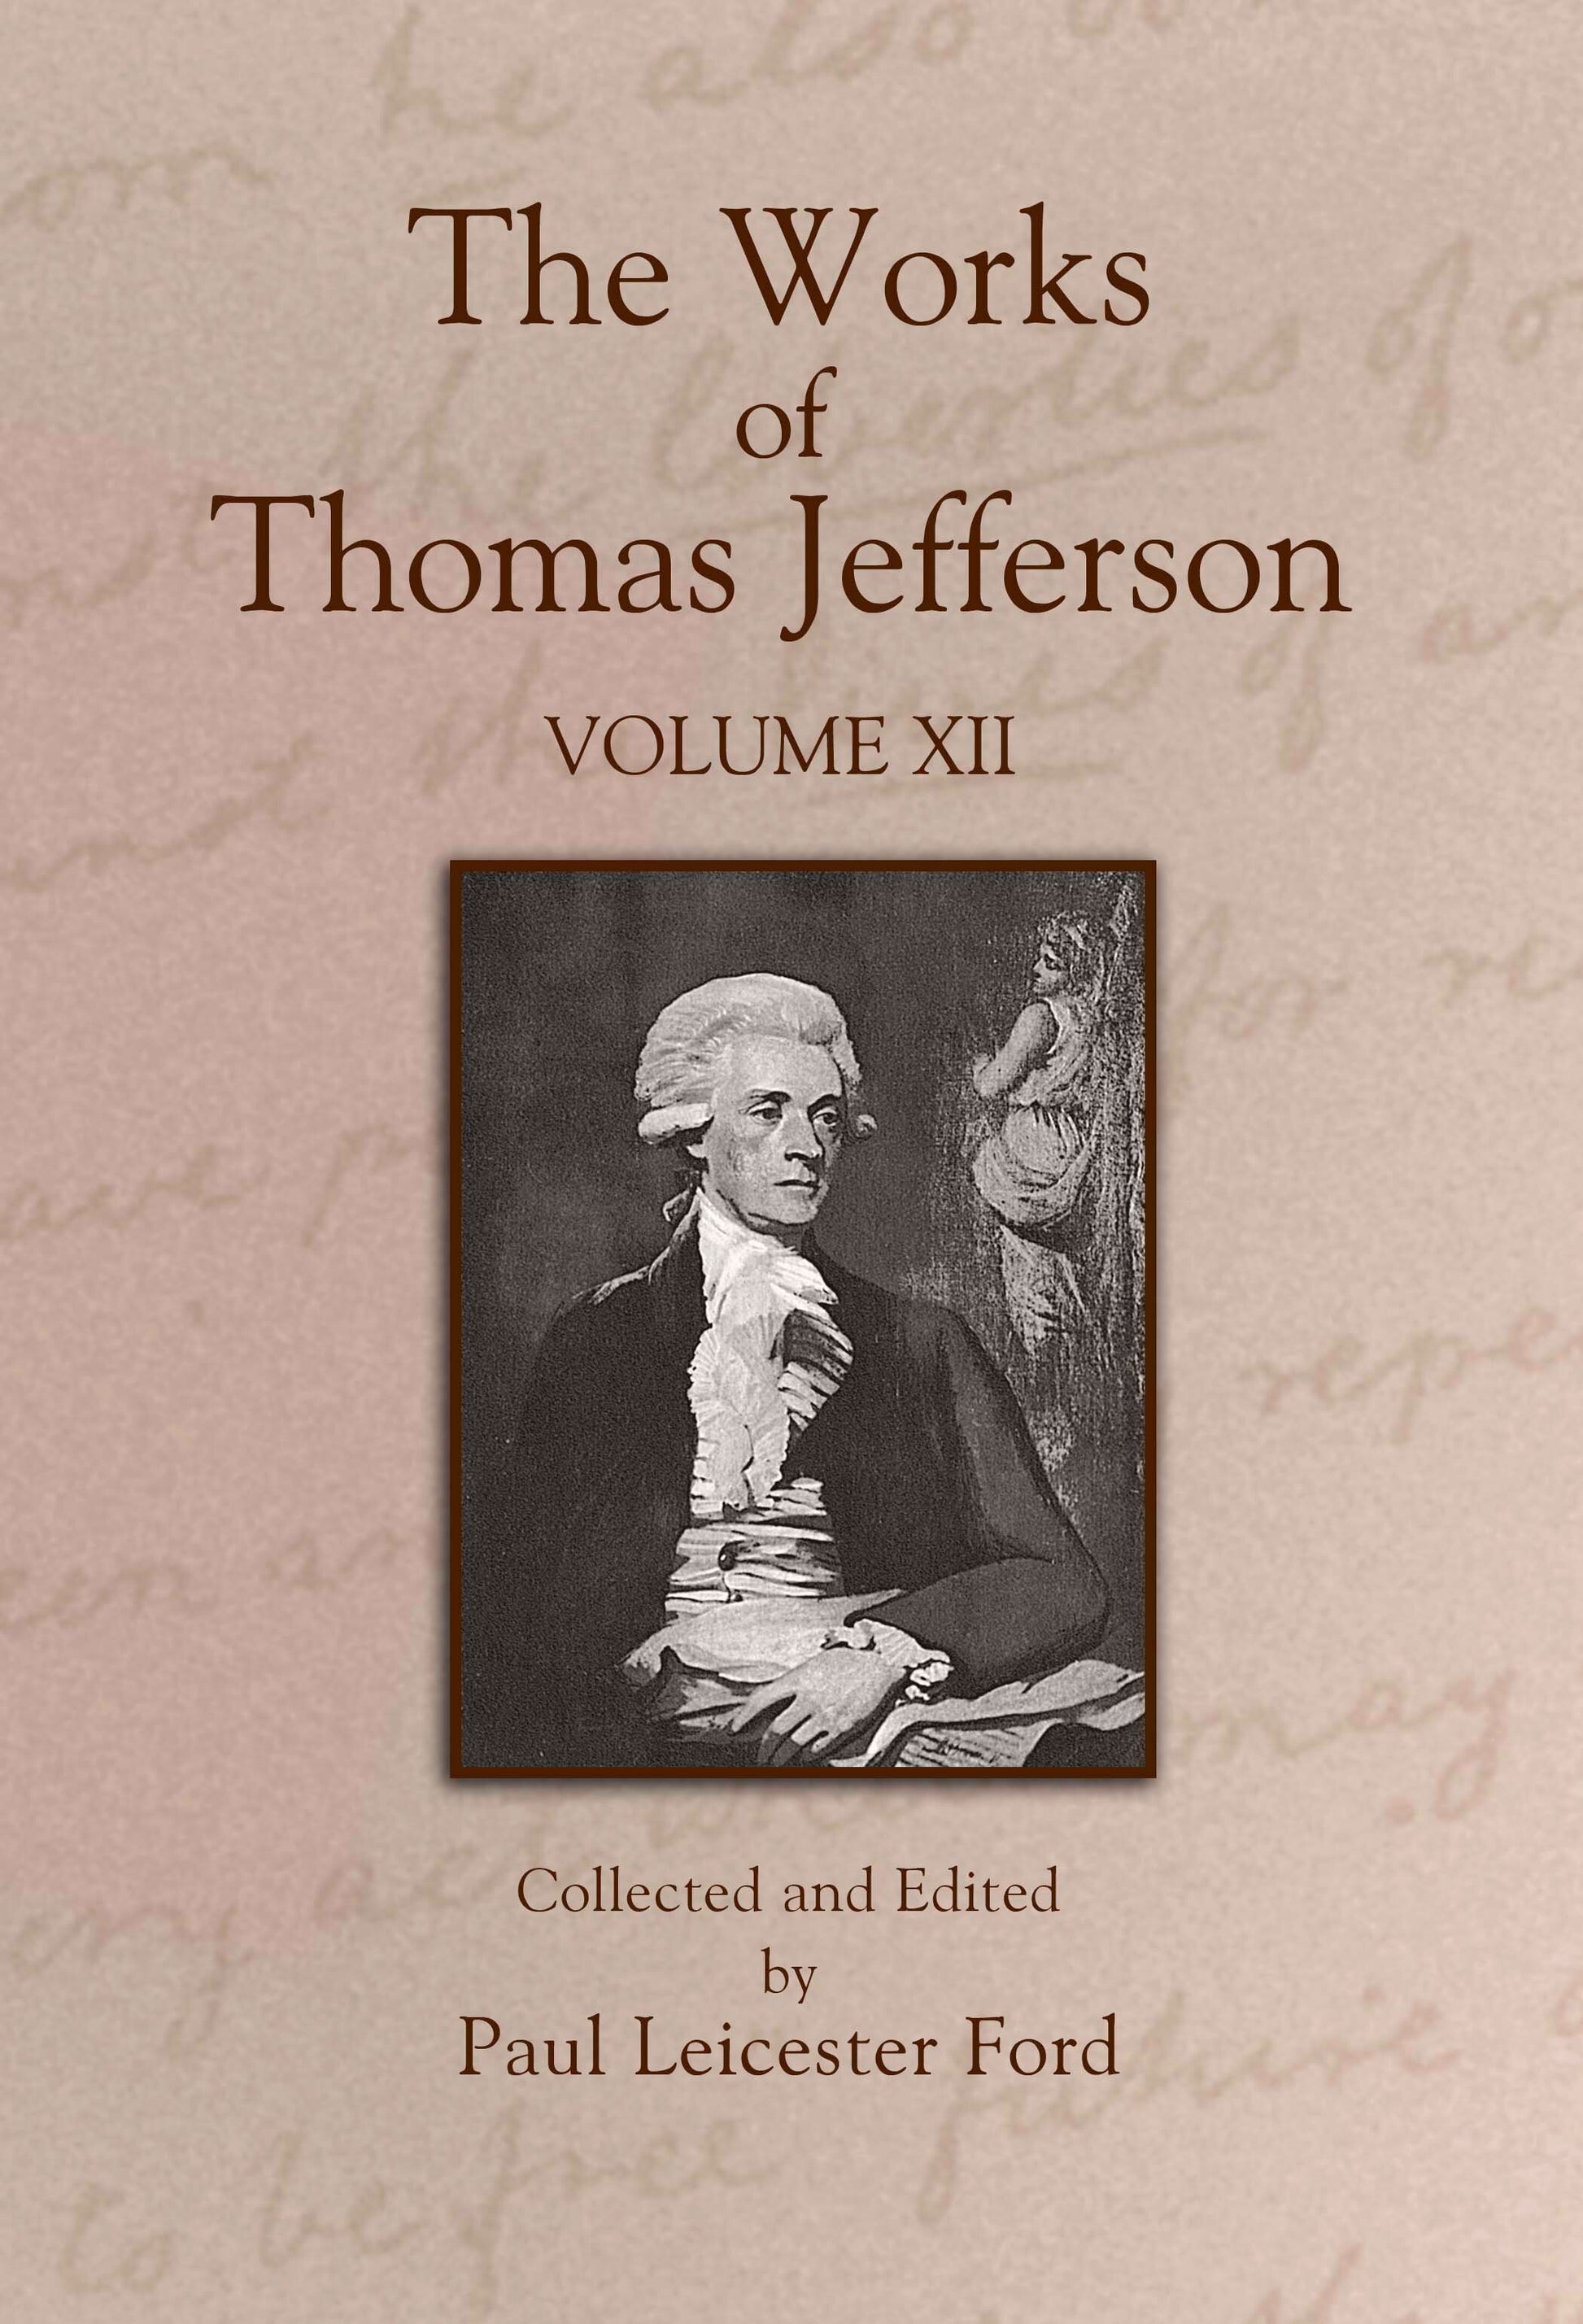 The Works of Thomas Jefferson: Volume XII